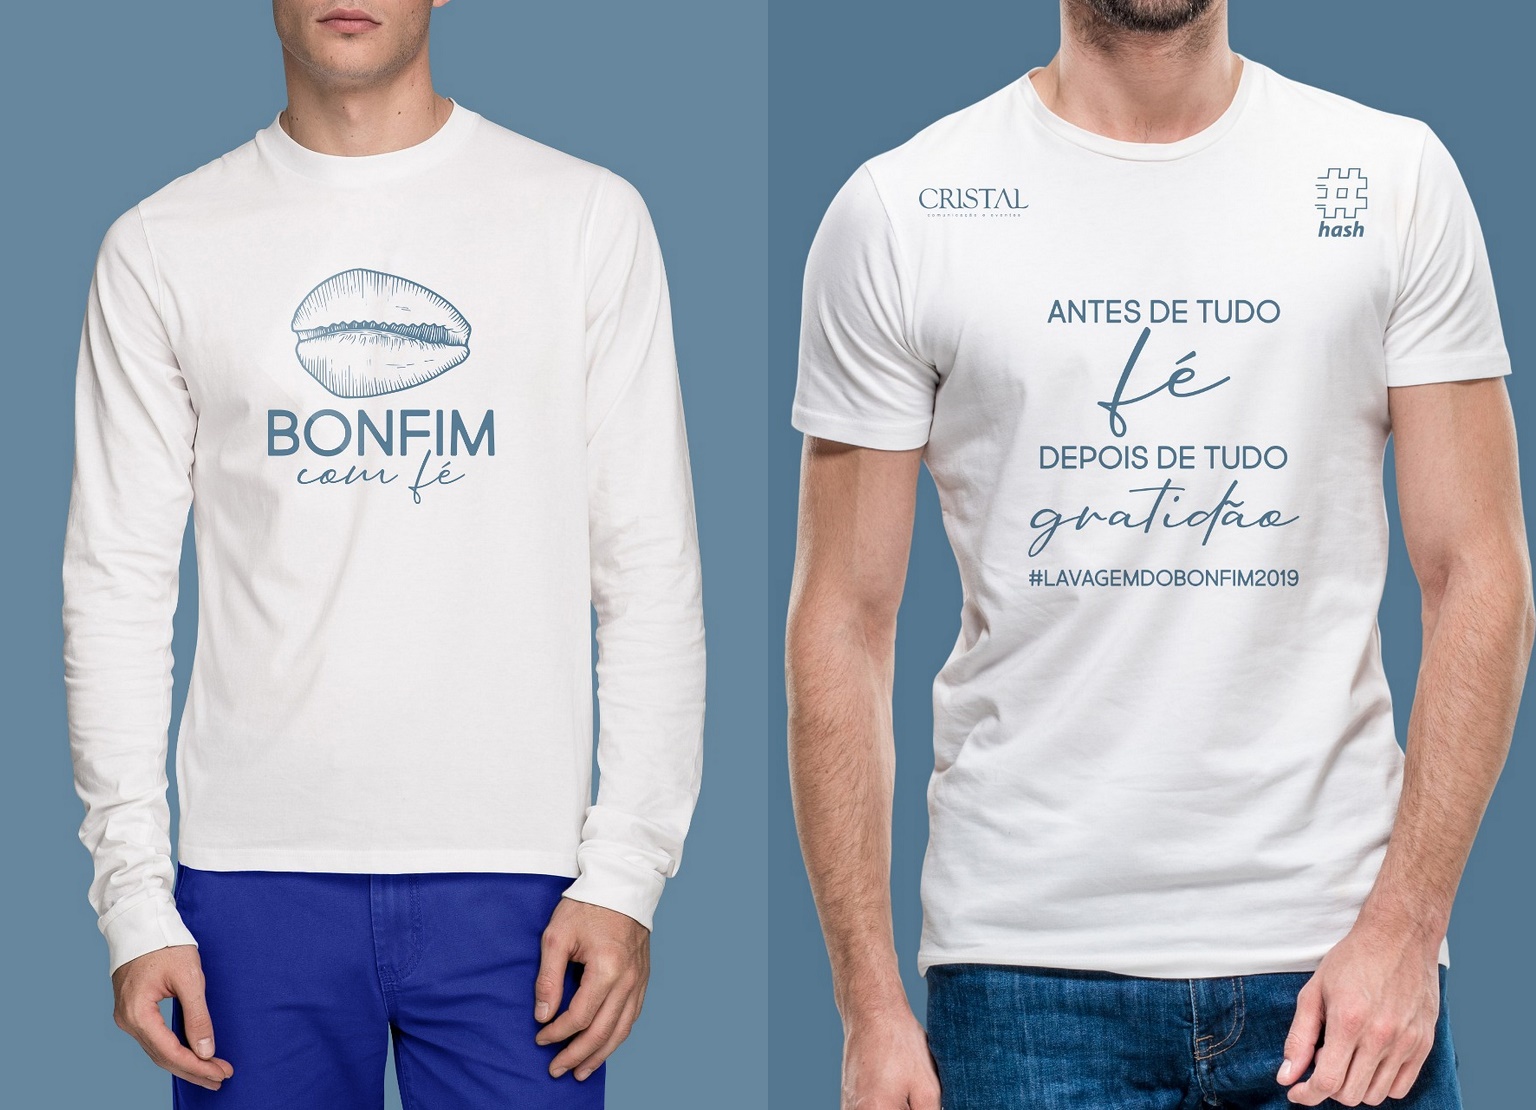 Litoraneus e Hash criam camisas exclusivas para o Bonfim com Fé 